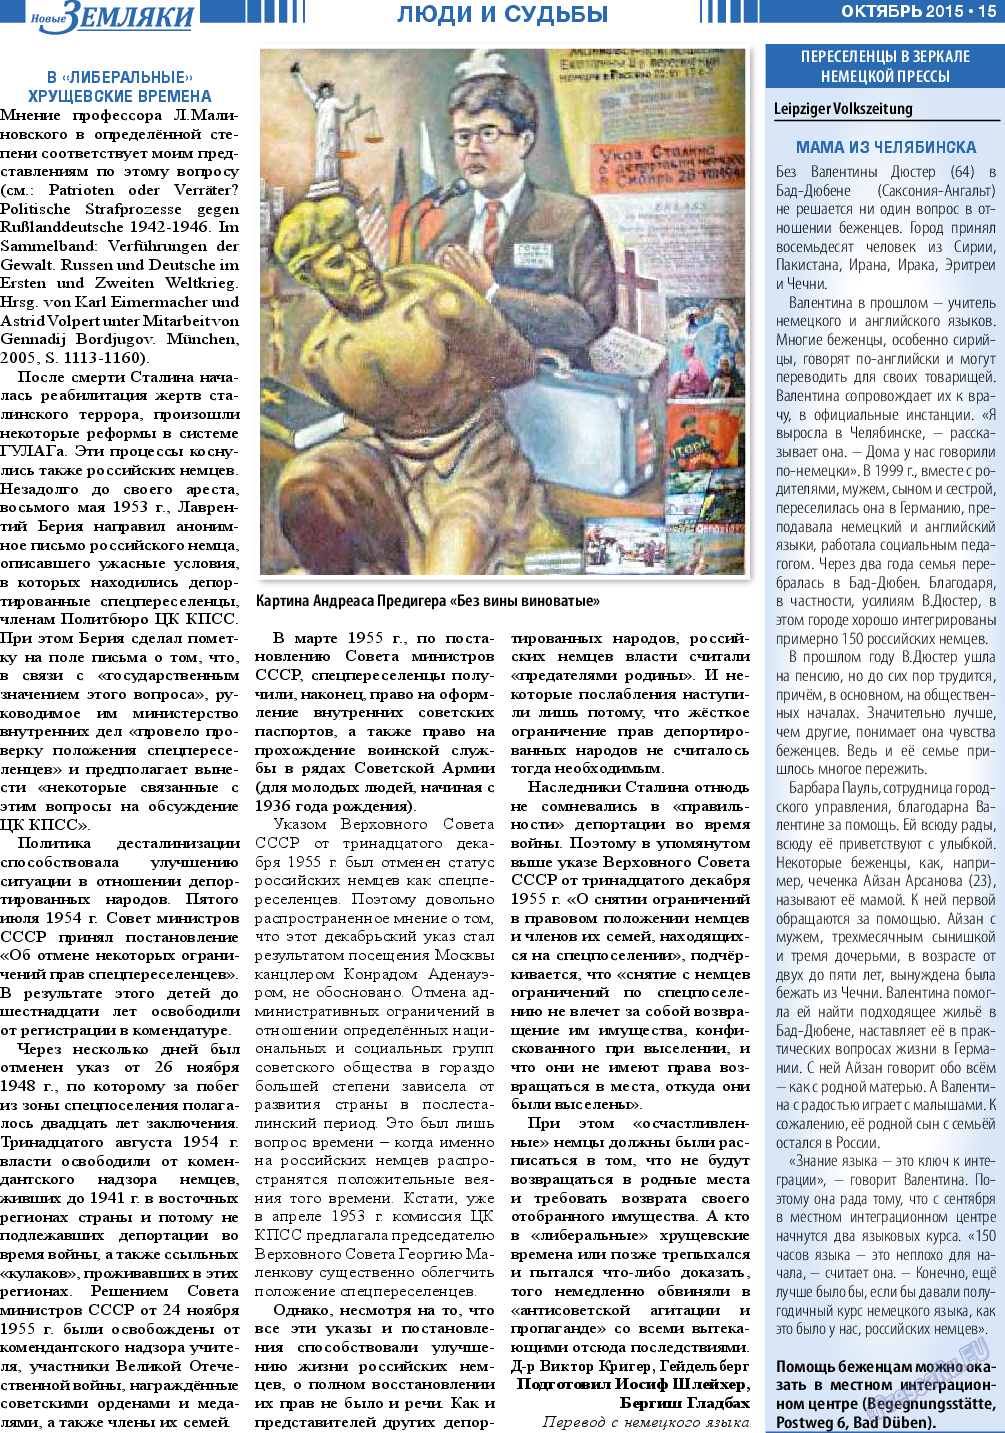 Новые Земляки, газета. 2015 №10 стр.15